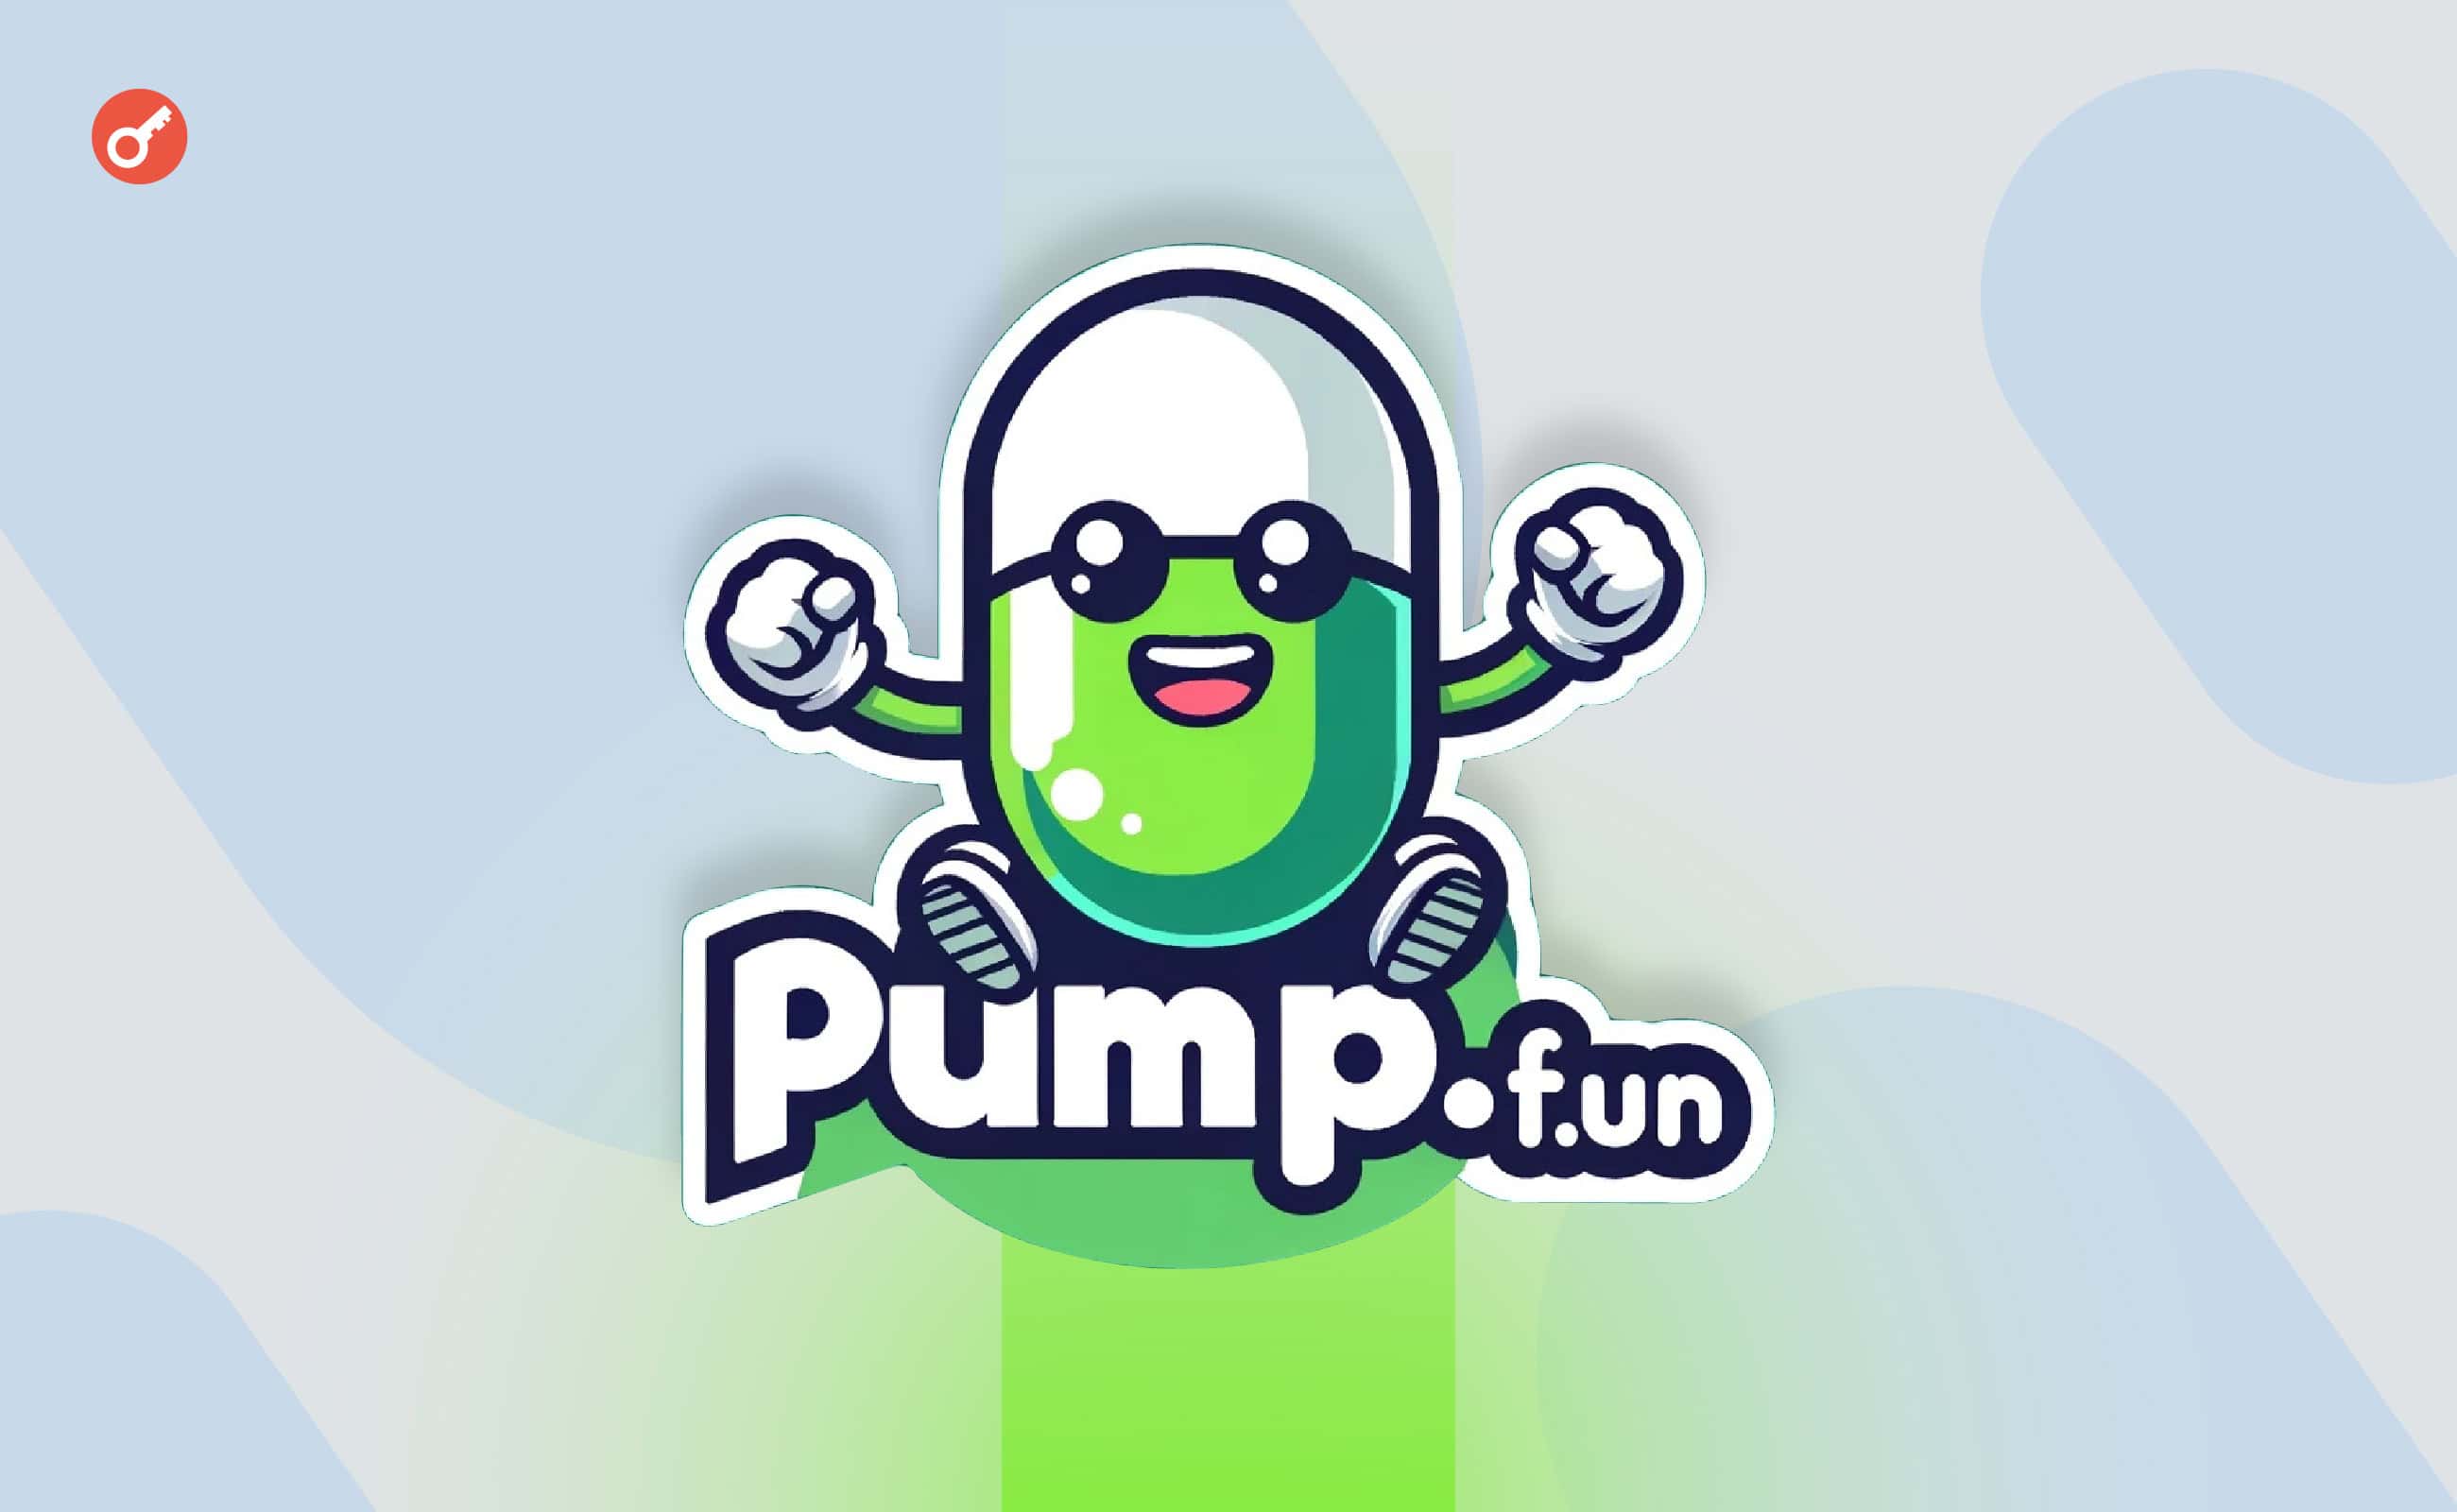 Загальний дохід платформи pump.fun перевищив $50 млн. Головний колаж новини.